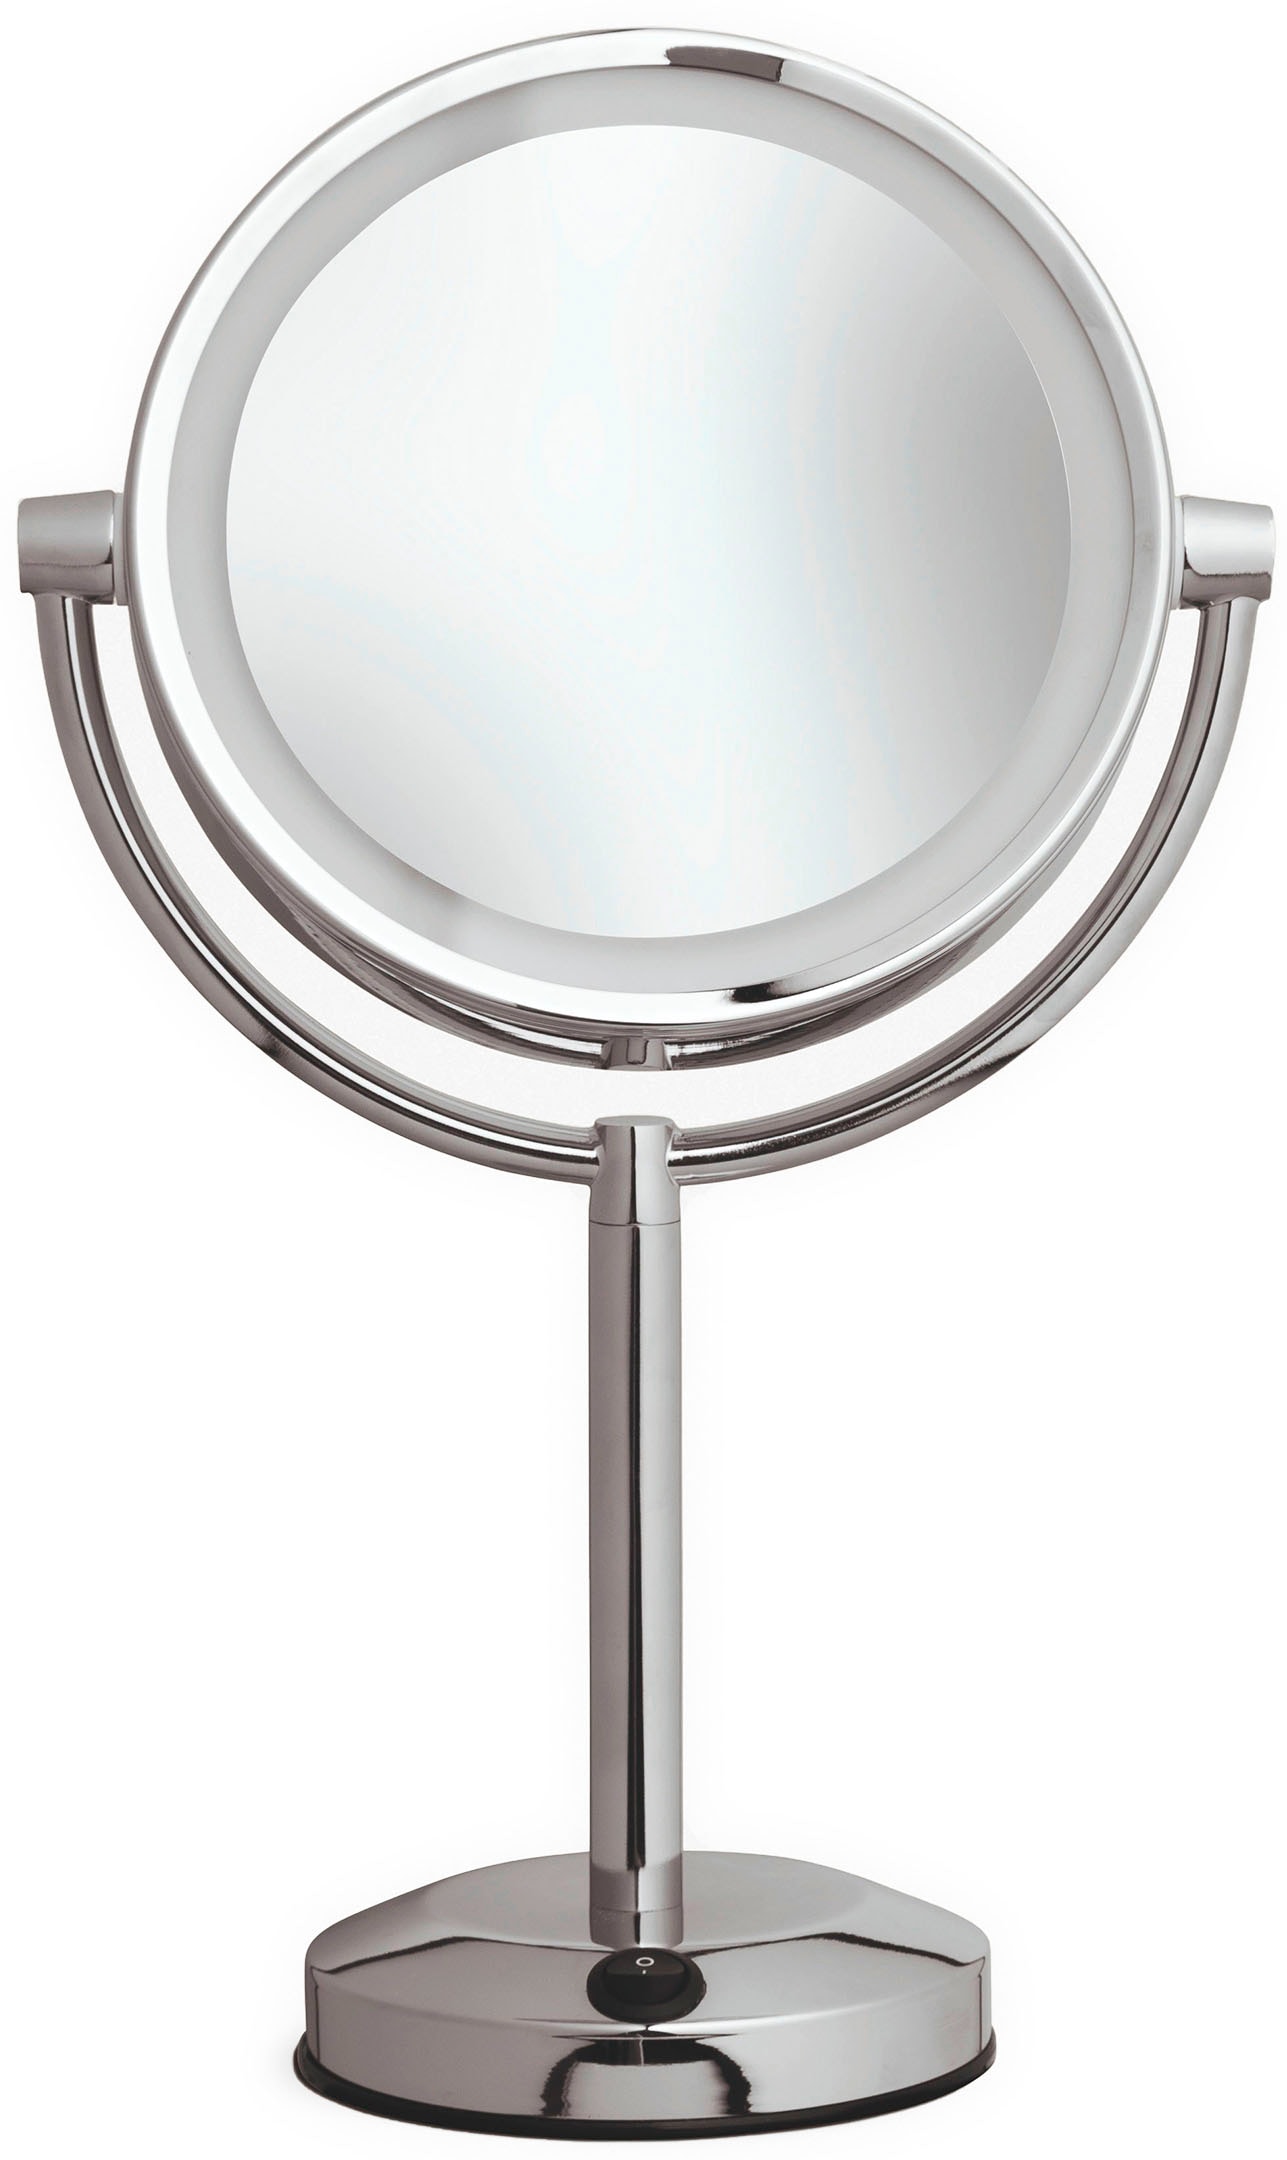 Kosmetikspiegel, ØxH: 20x40 cm, 5-fache Vergrößerung